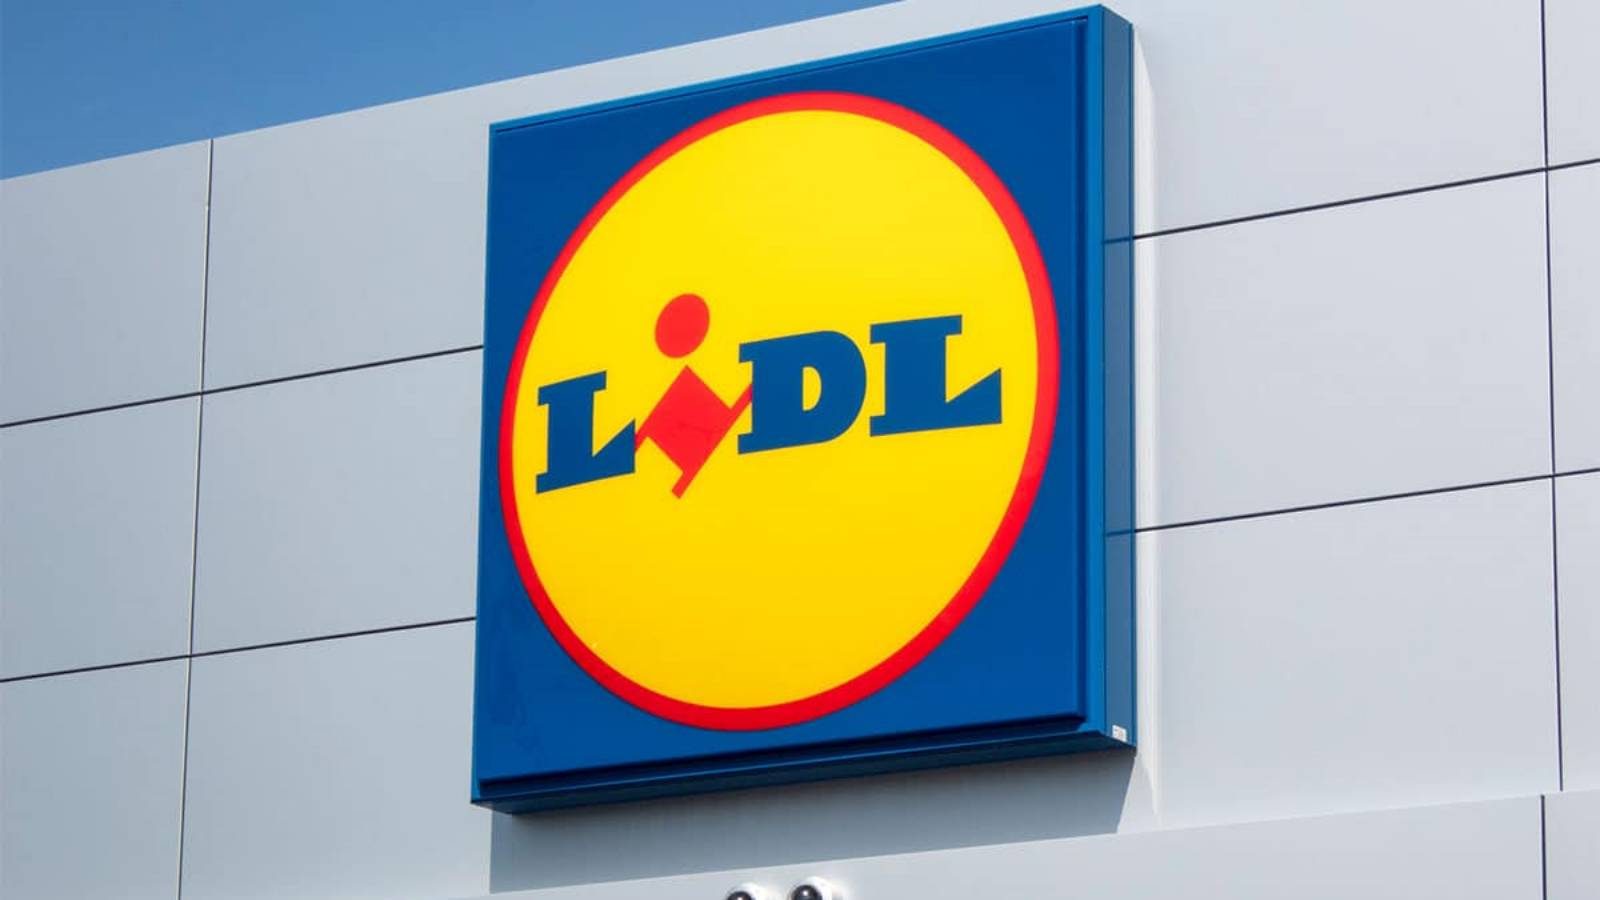 LIDL Romania beneficiary